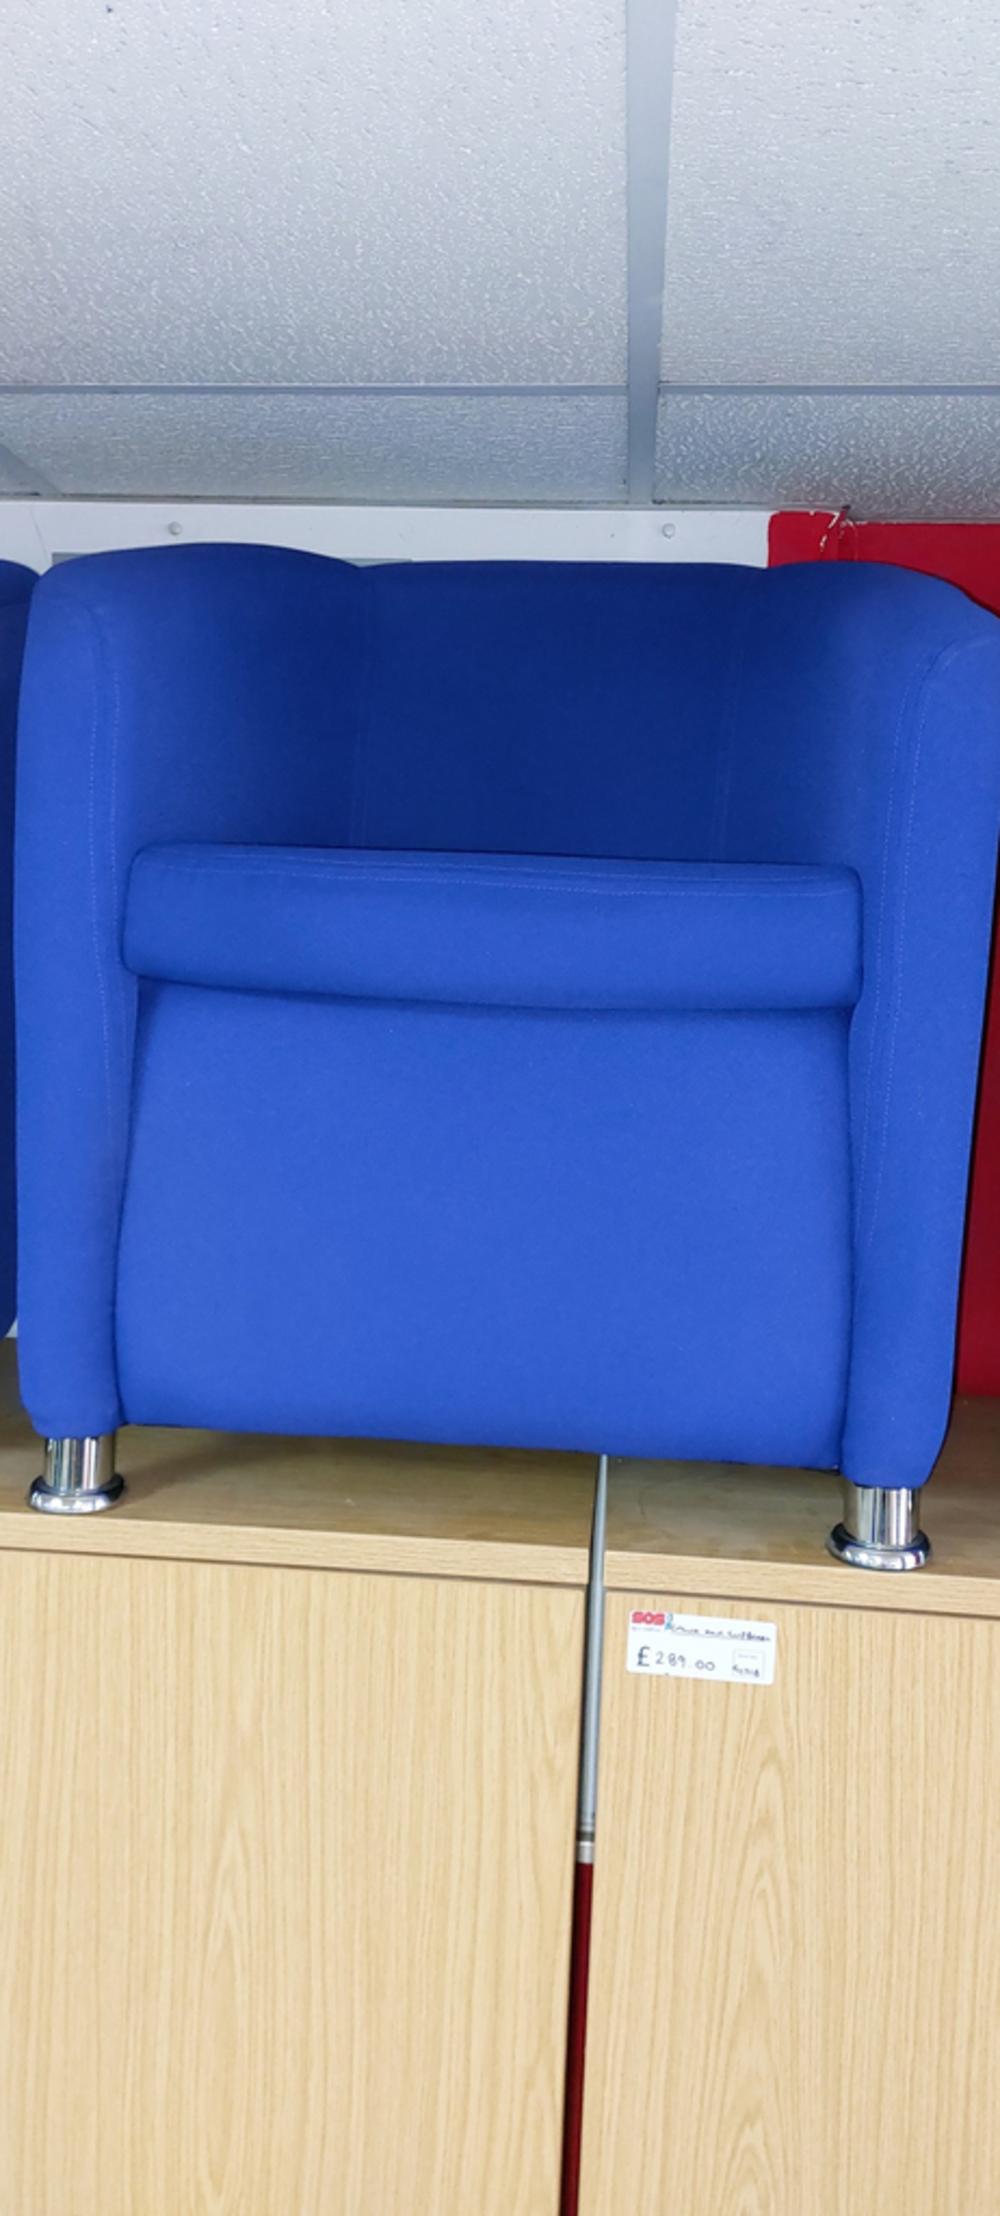 Alliance Scuba Blue Tub Chair With Chrome Feet